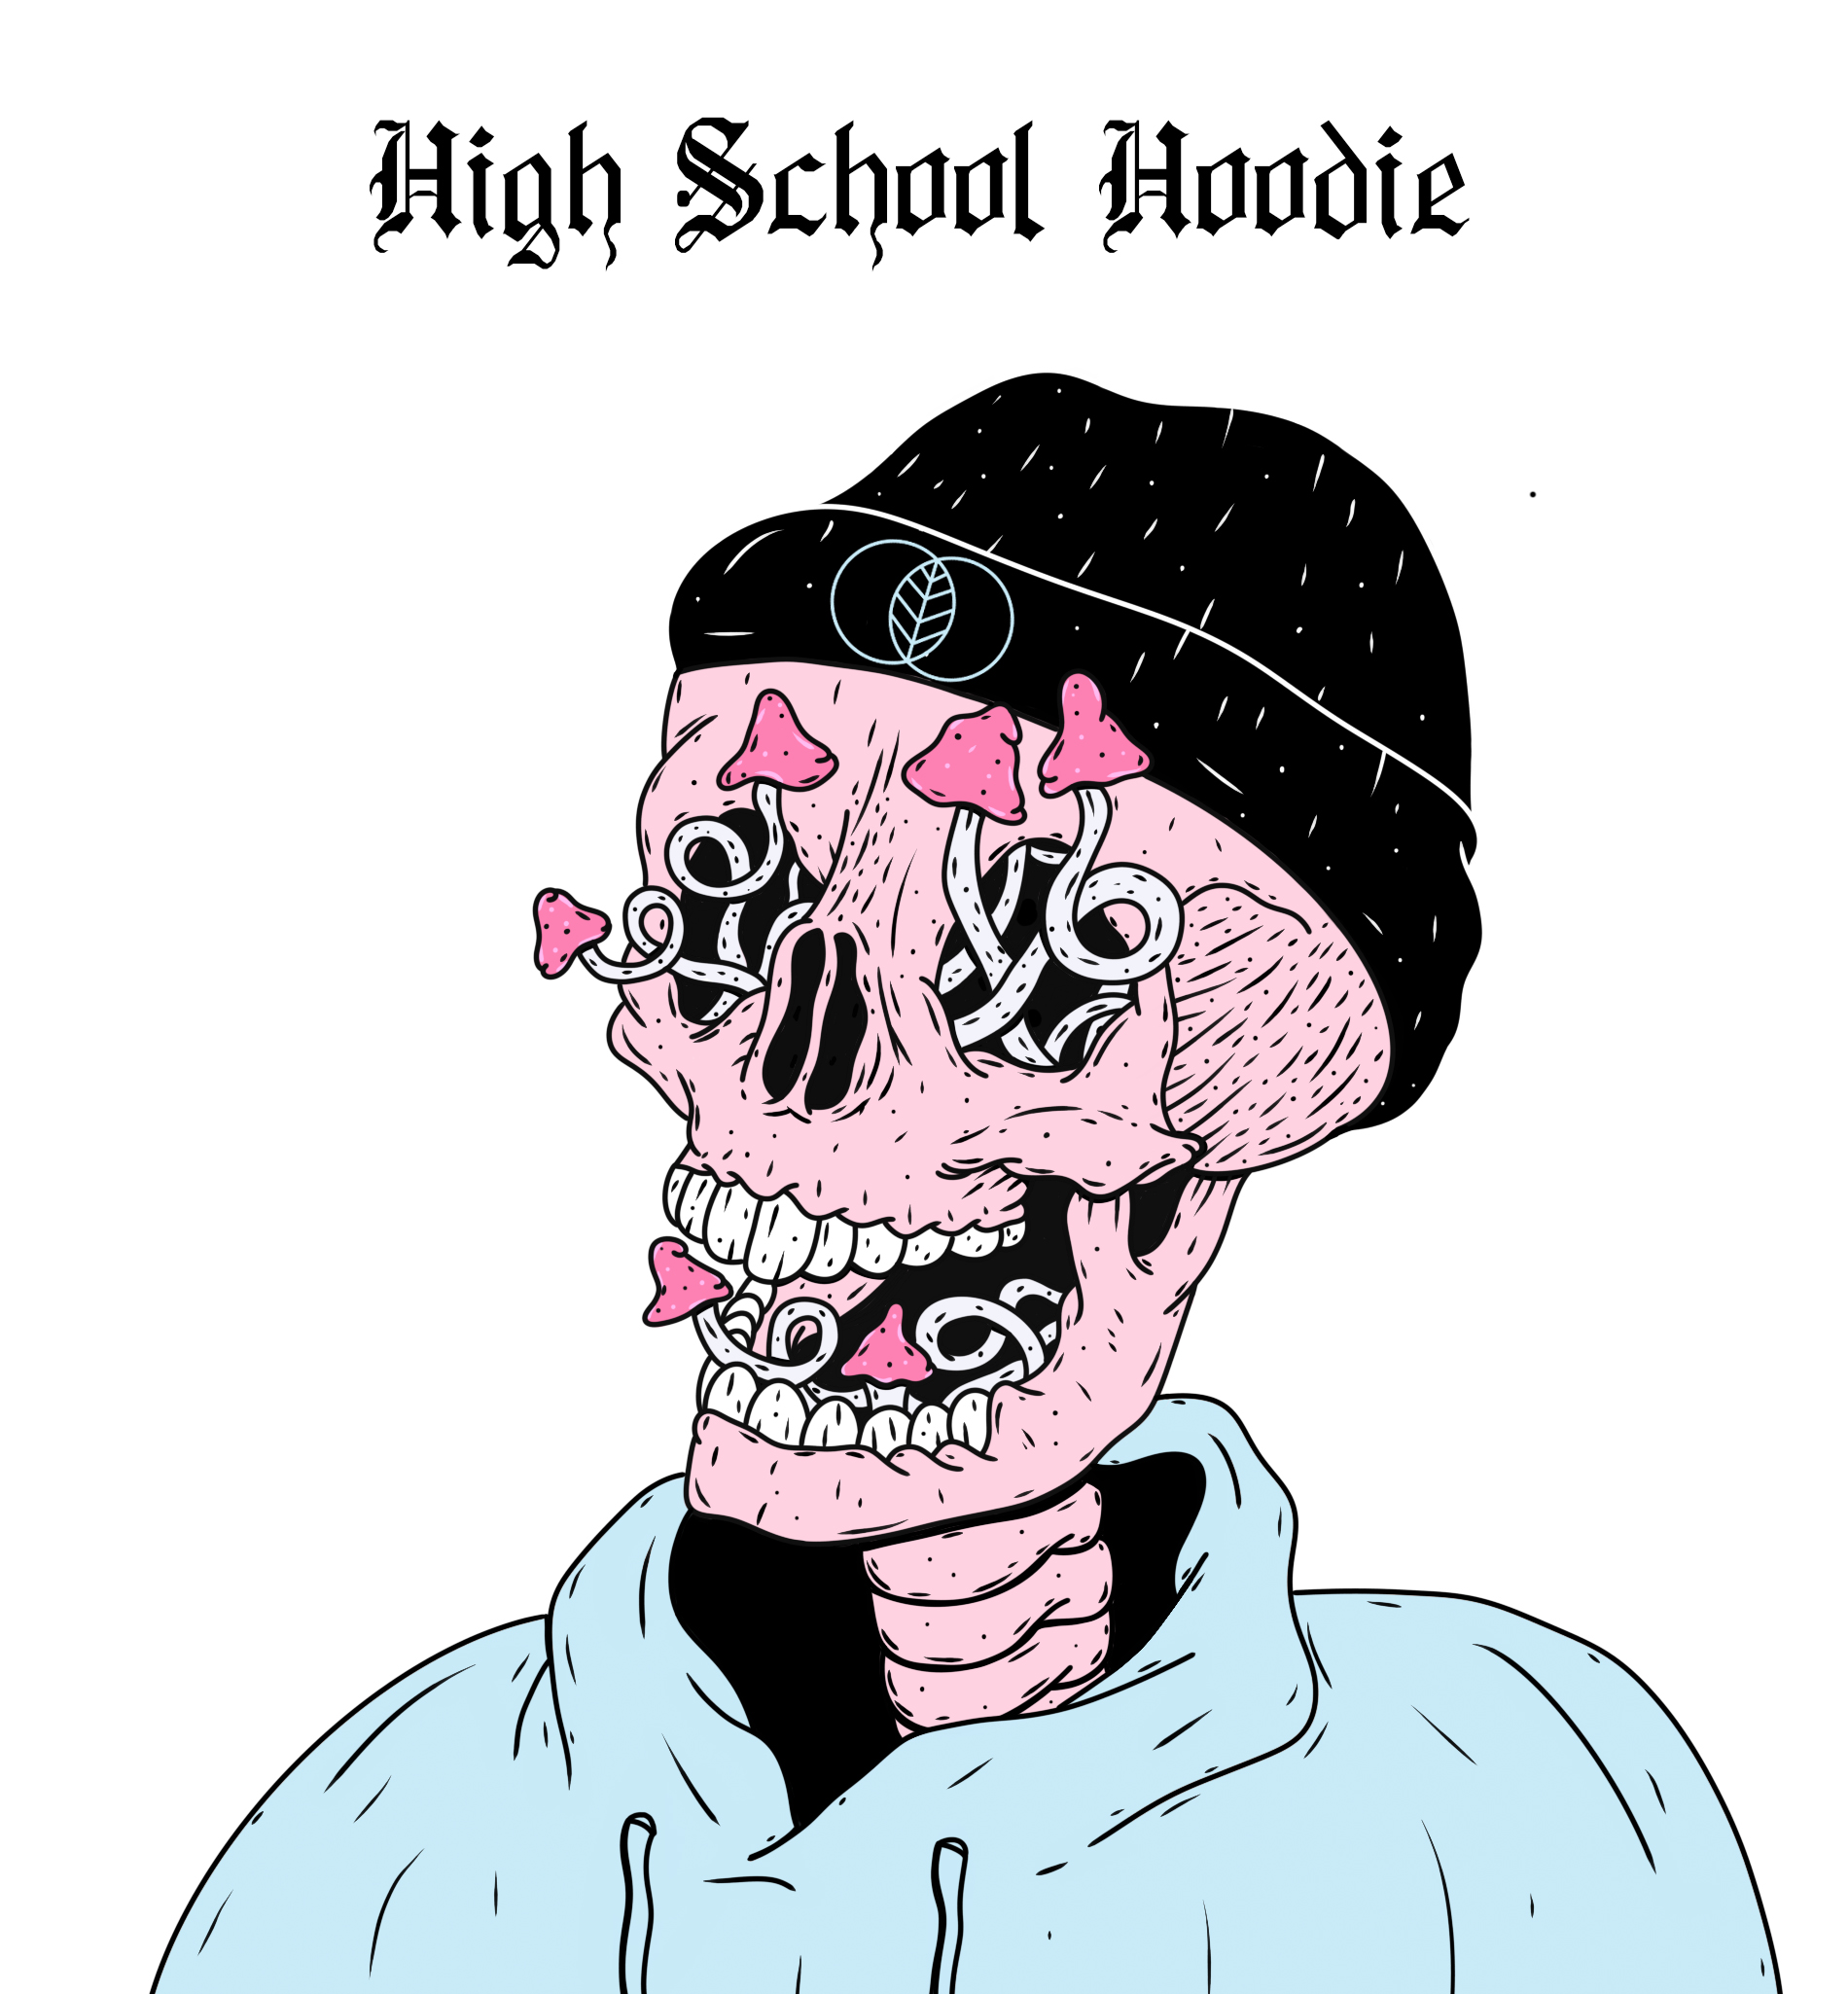 UNTHOTOF - High School Hoodie